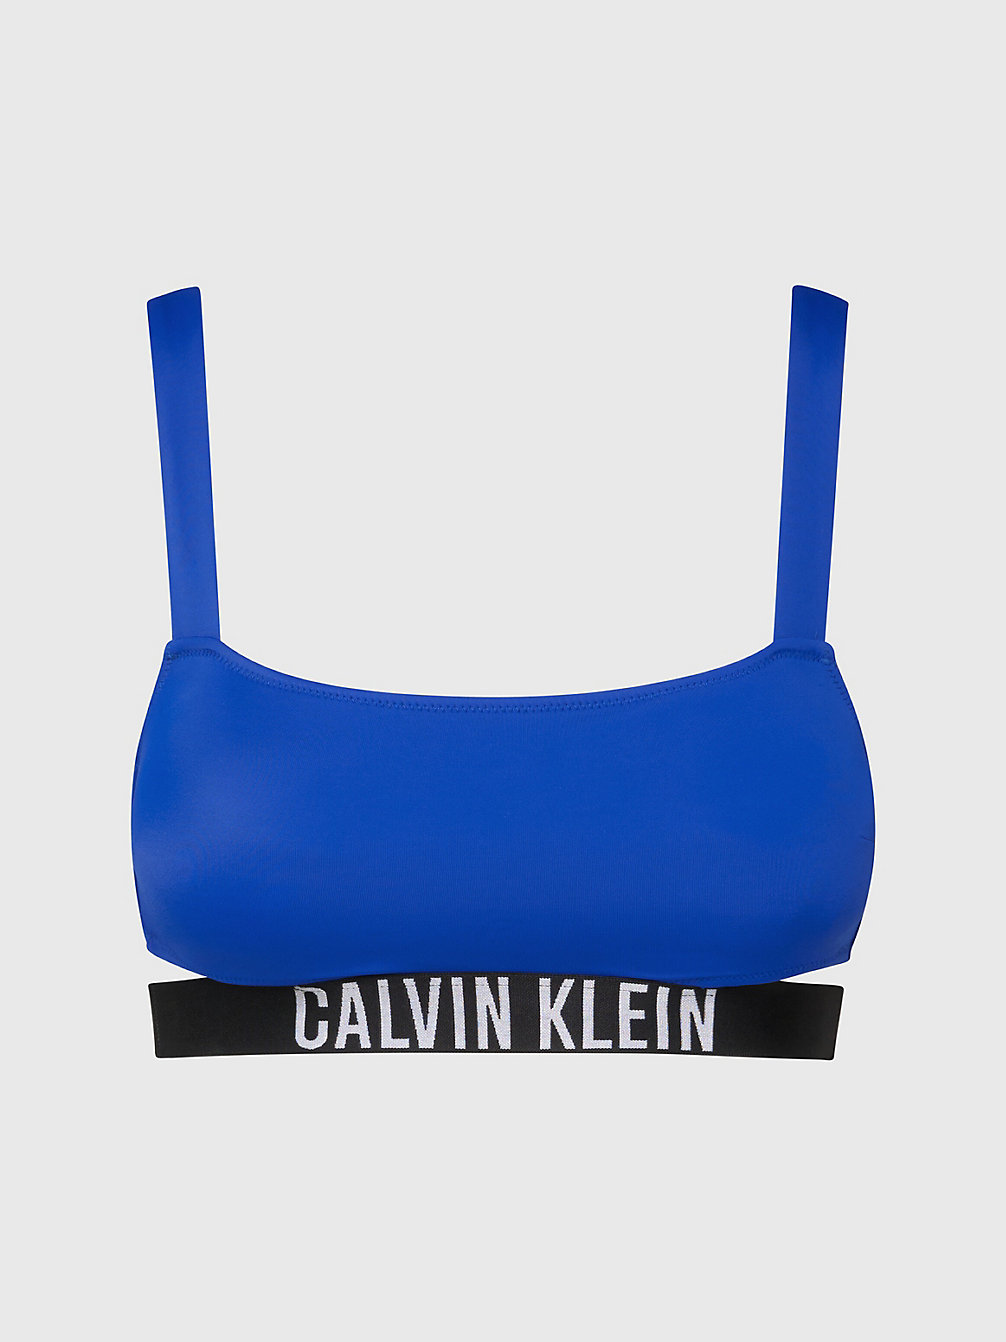 BISTRO BLUE Haut De Bikini Brassière - Intense Power undefined femmes Calvin Klein